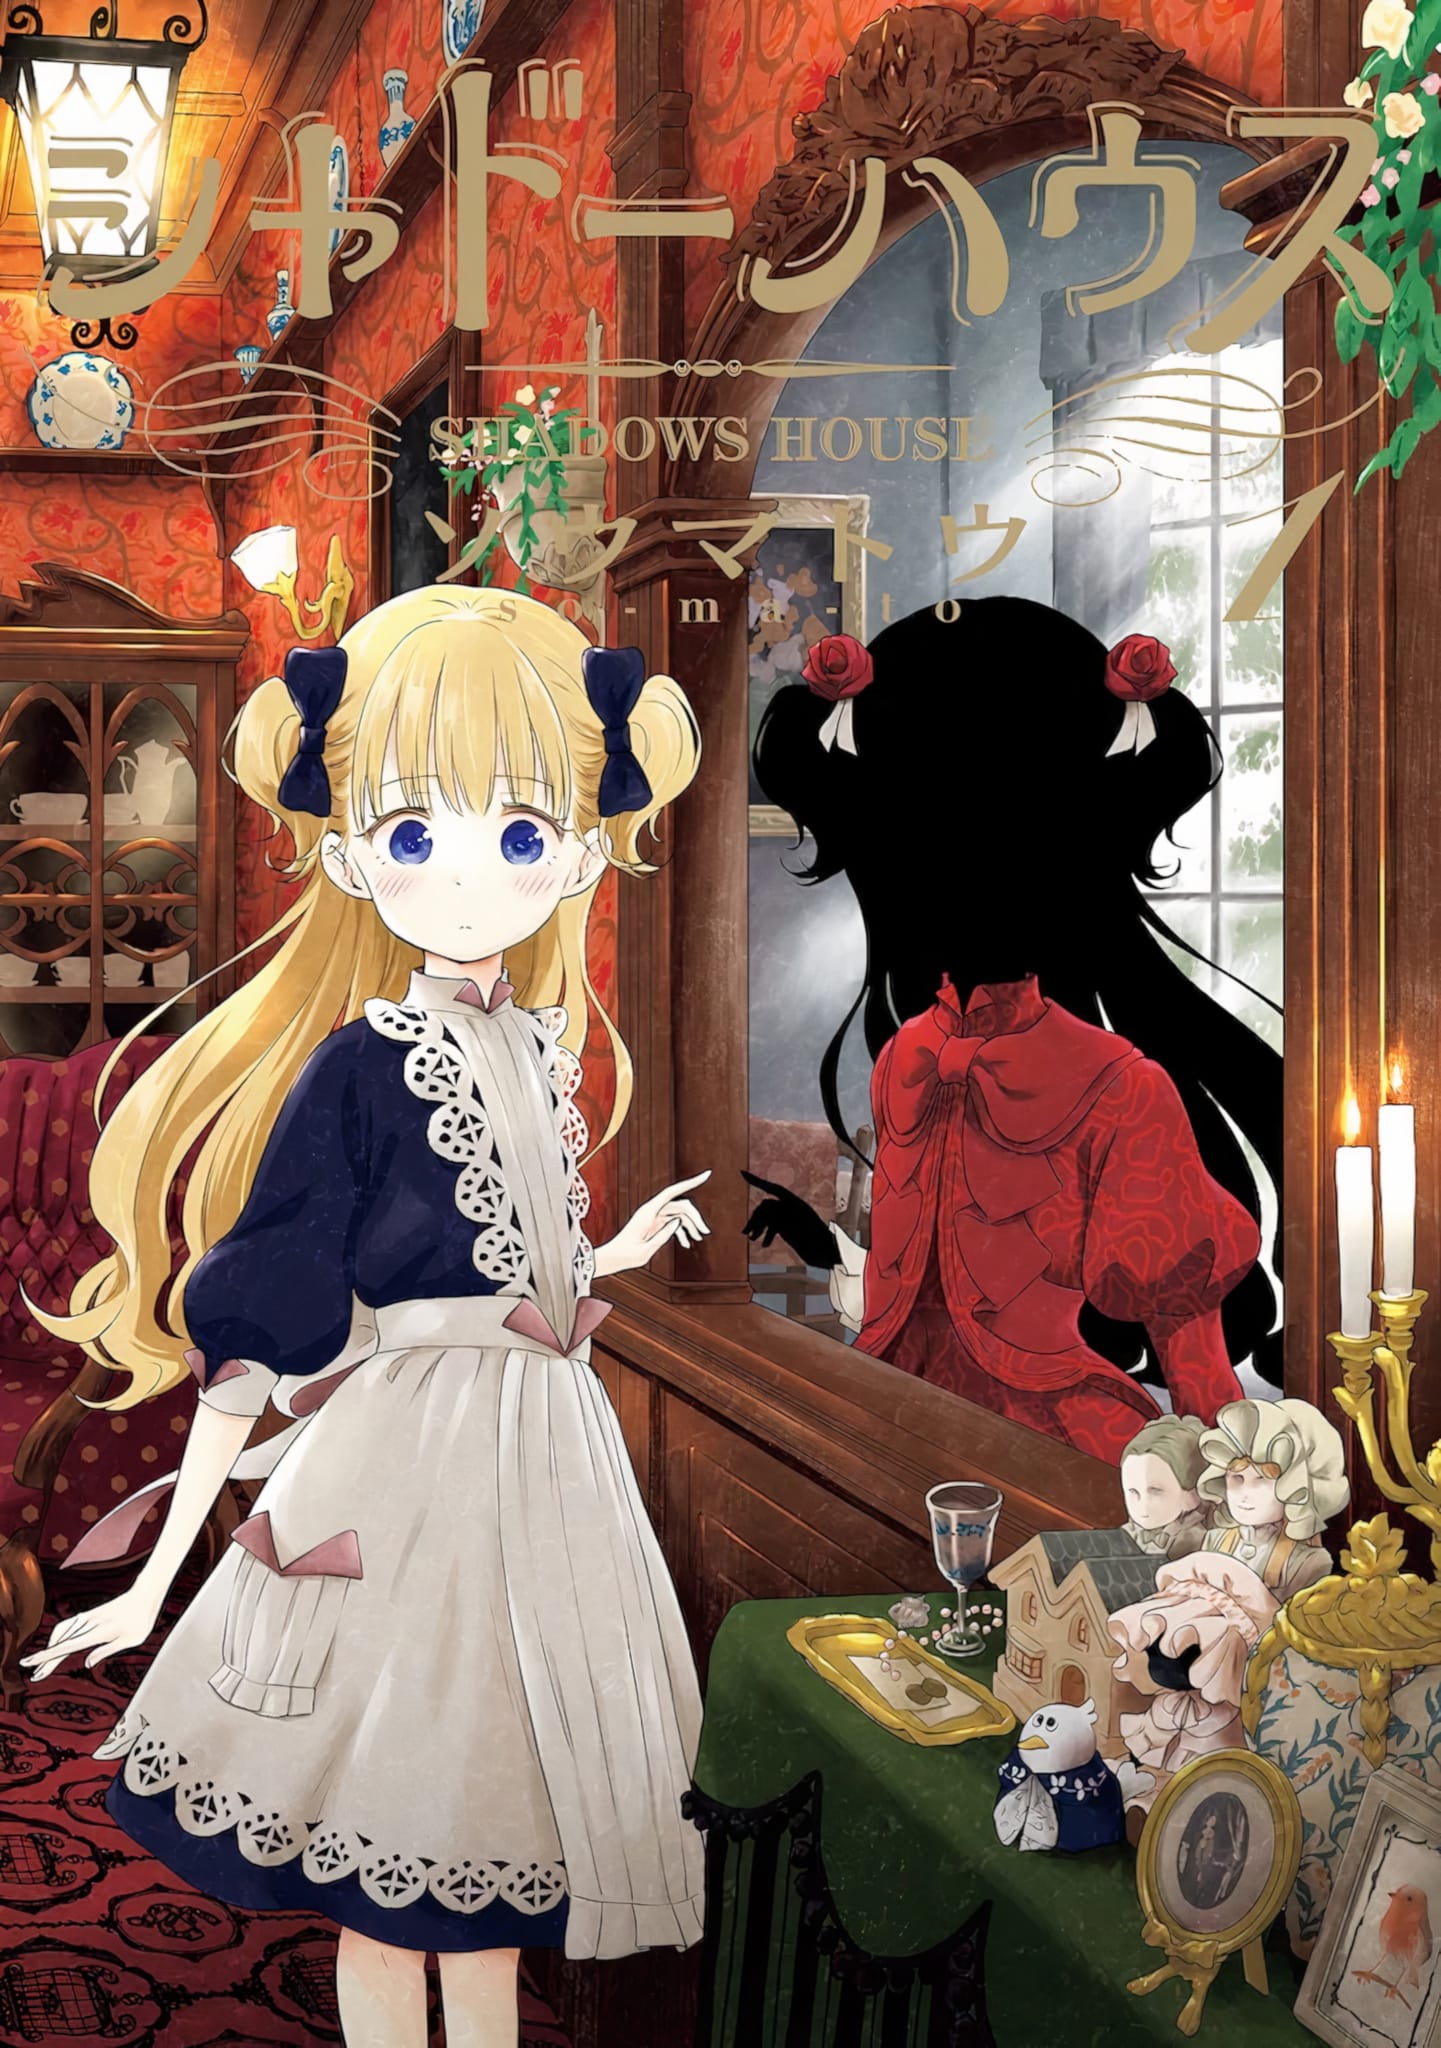 Annonce de l'anime Shadows House